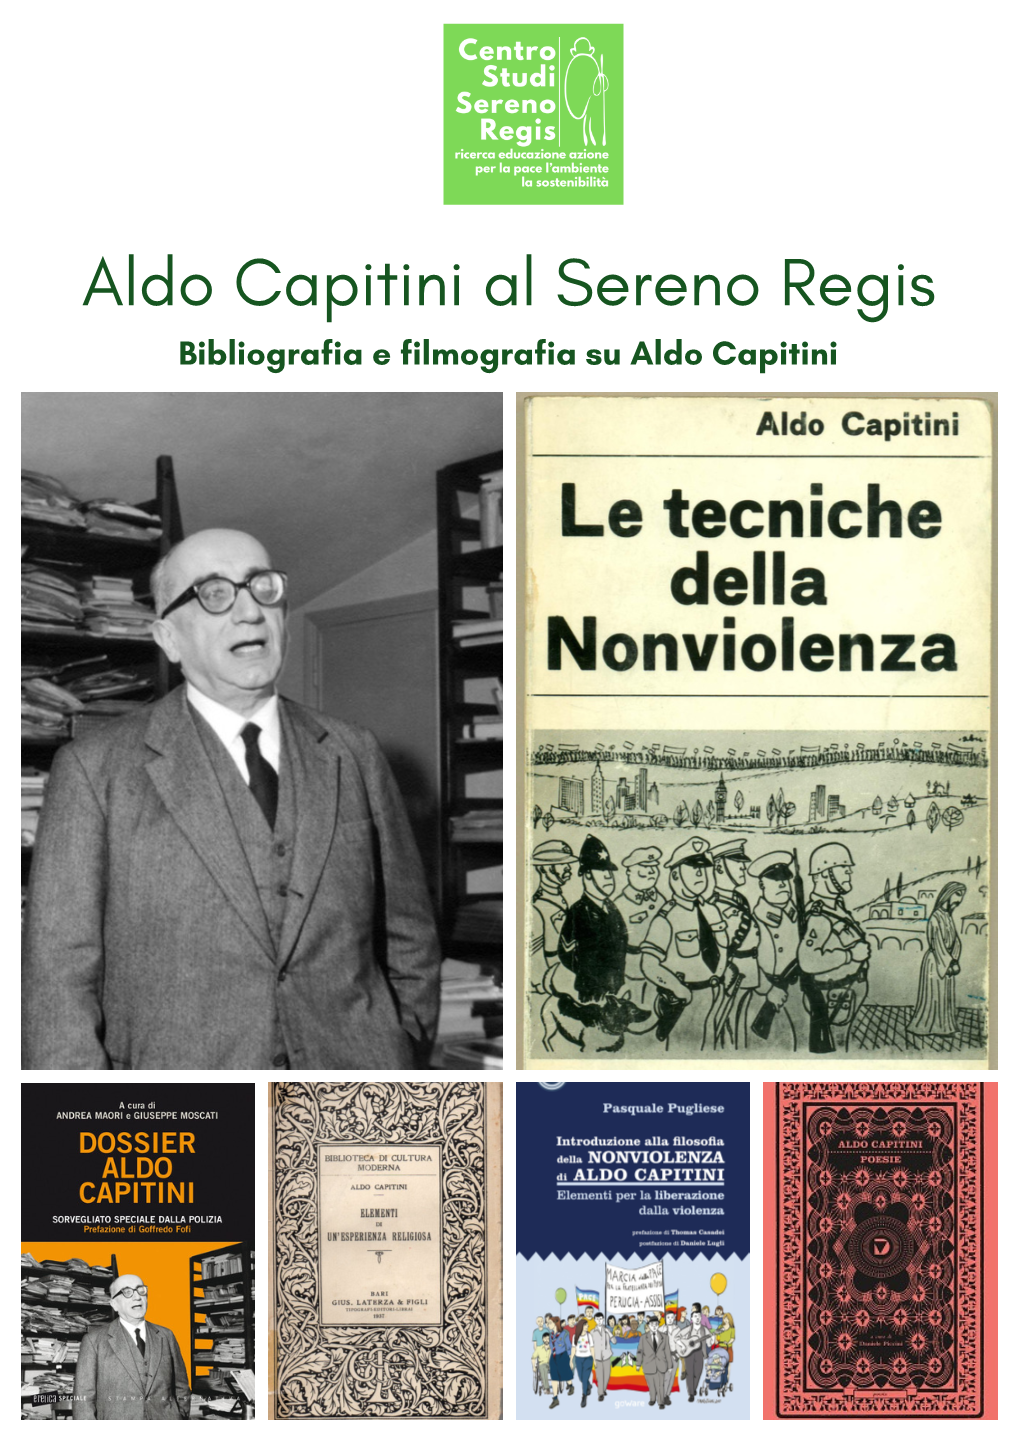 Biblio Aldo Capitini